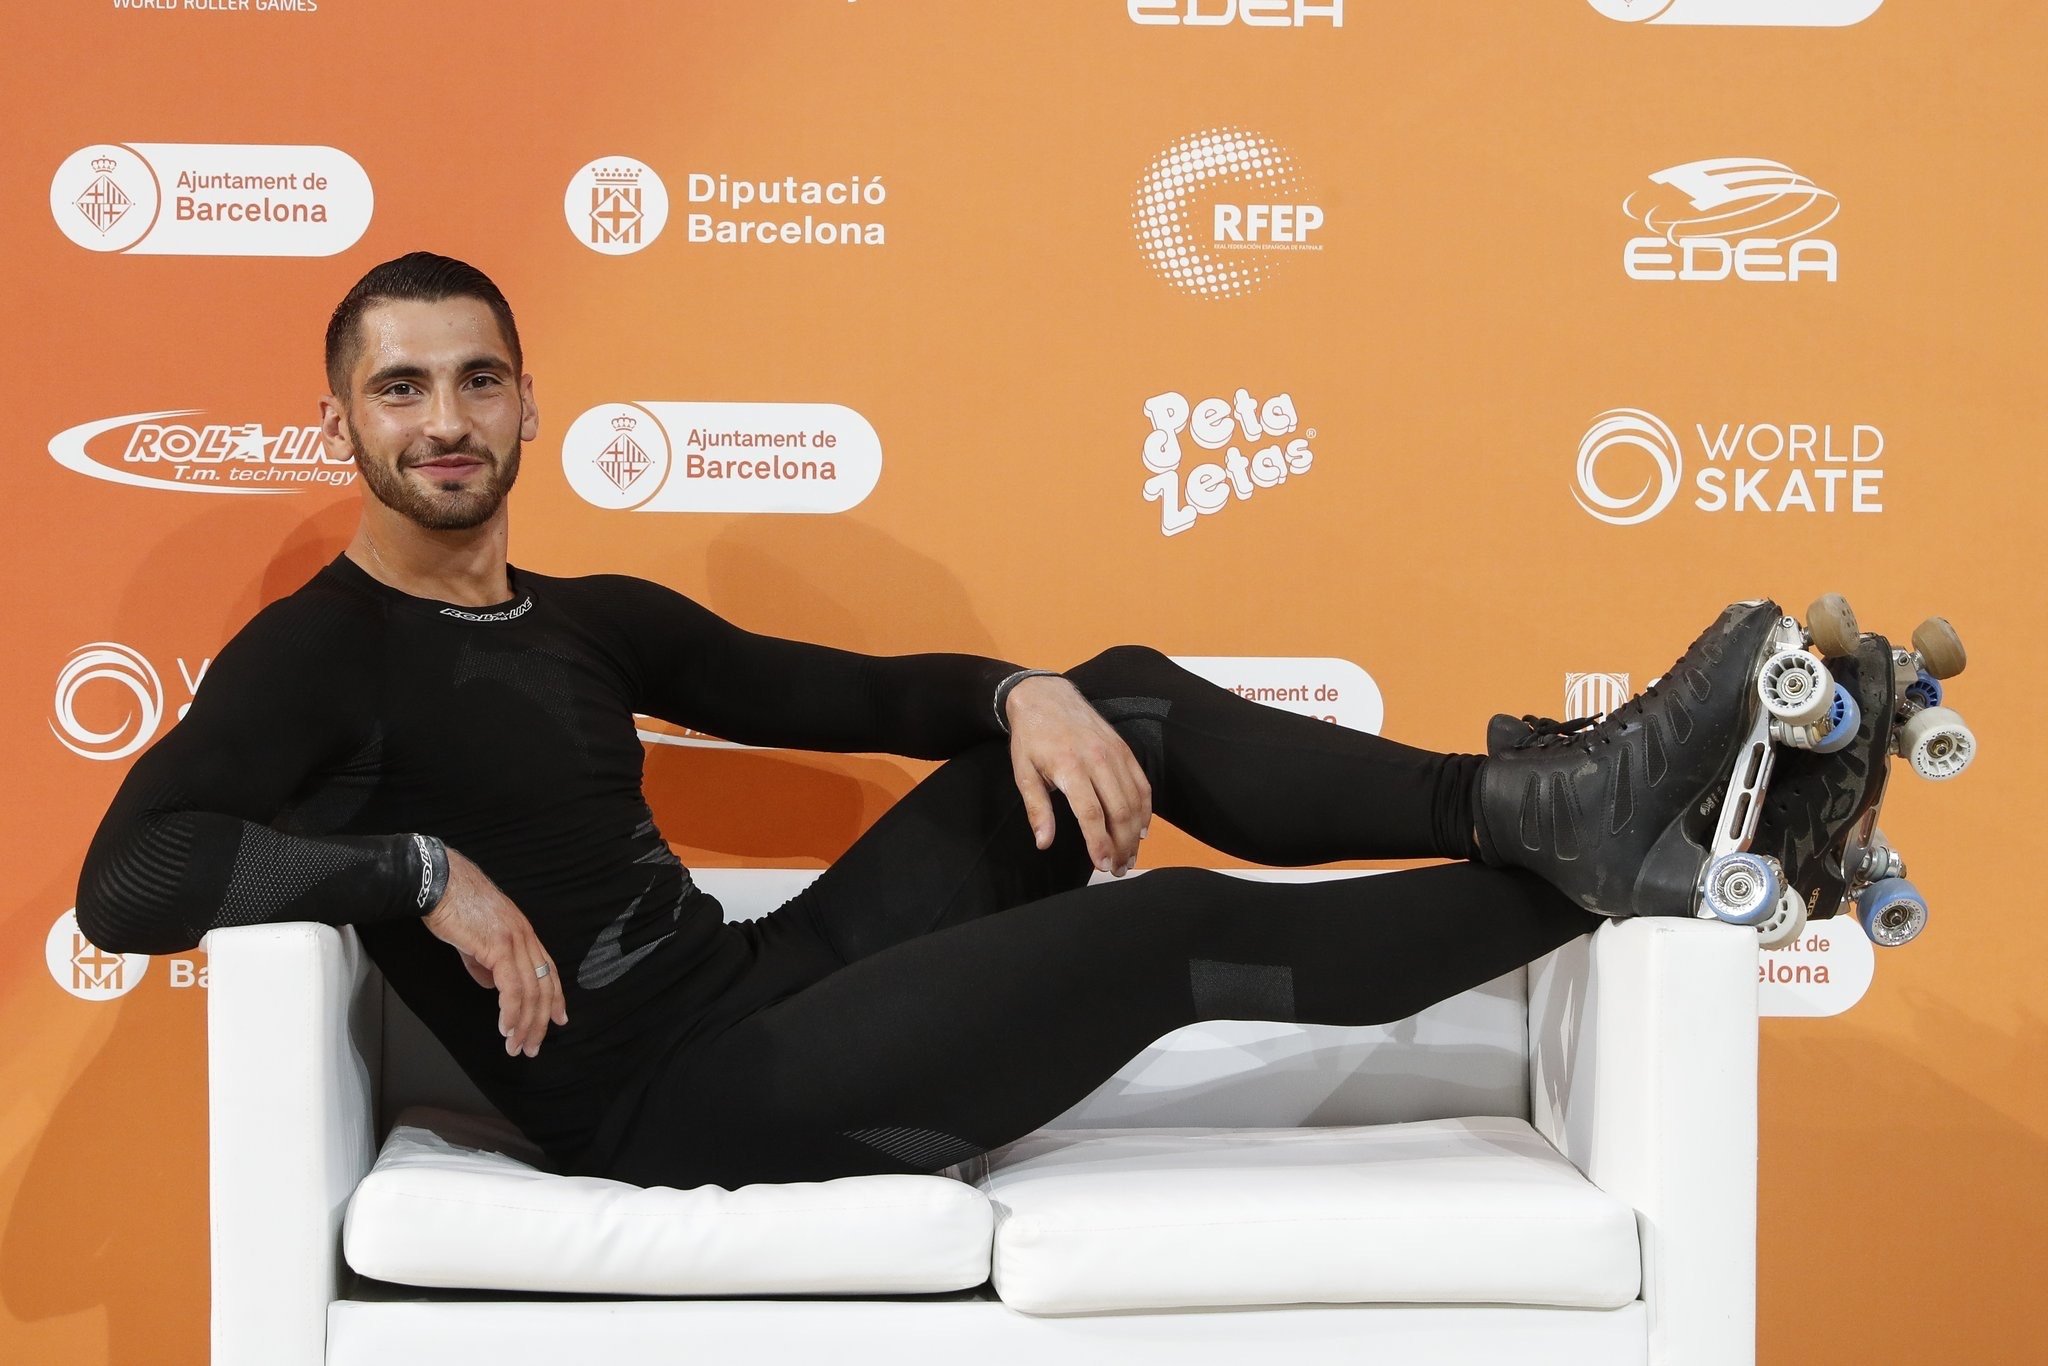 L’estrella mundial del patinatge artístic Luca Lucaroni lluirà al Palau Sant Jordi